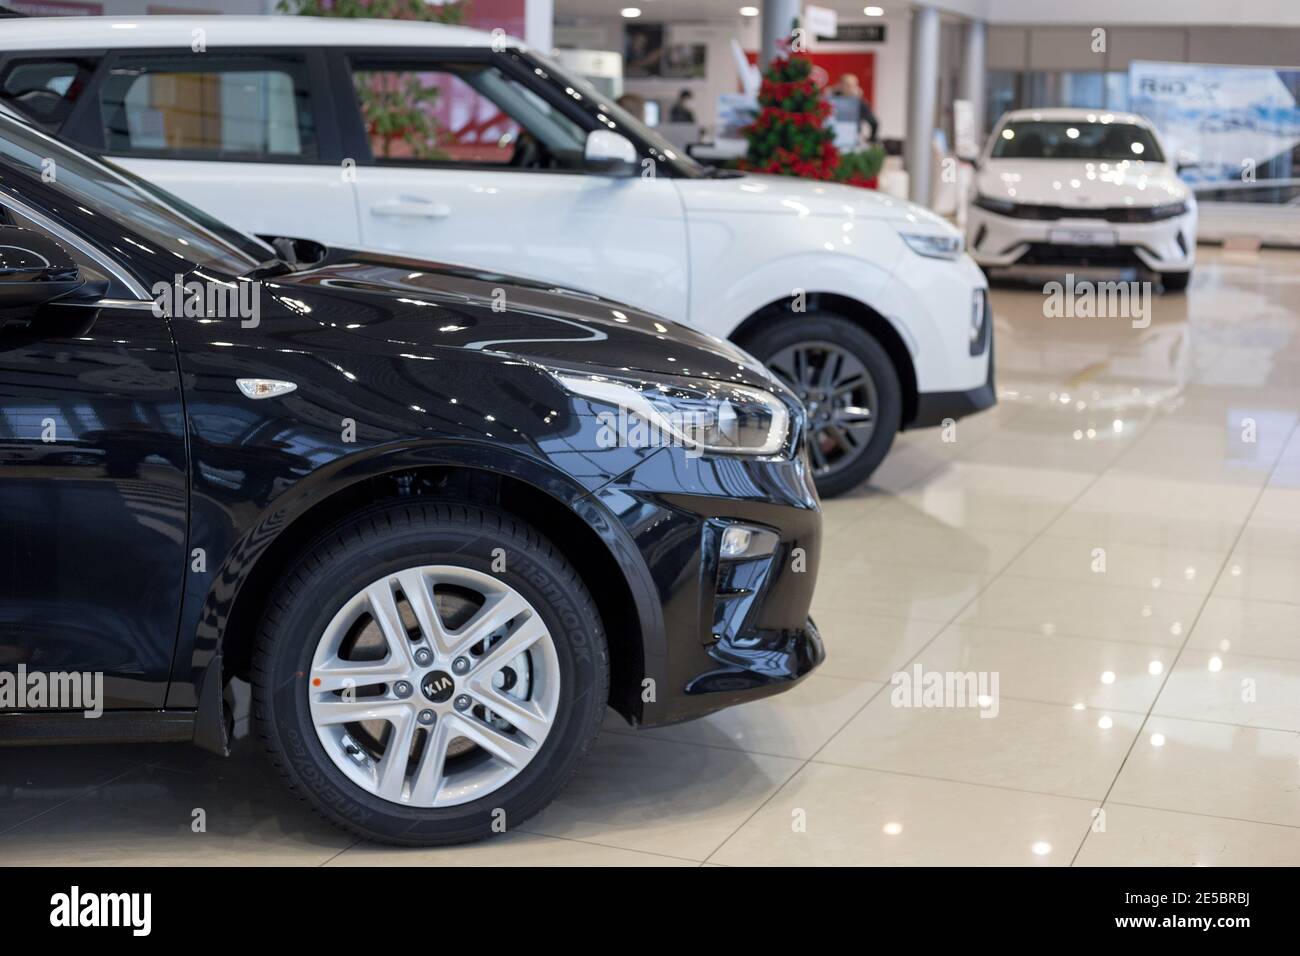 Russia, Izhevsk - December 28, 2020: KIA showroom. New modern cars in dealer showroom. Famous world brand. Prestigious vehicles. Stock Photo